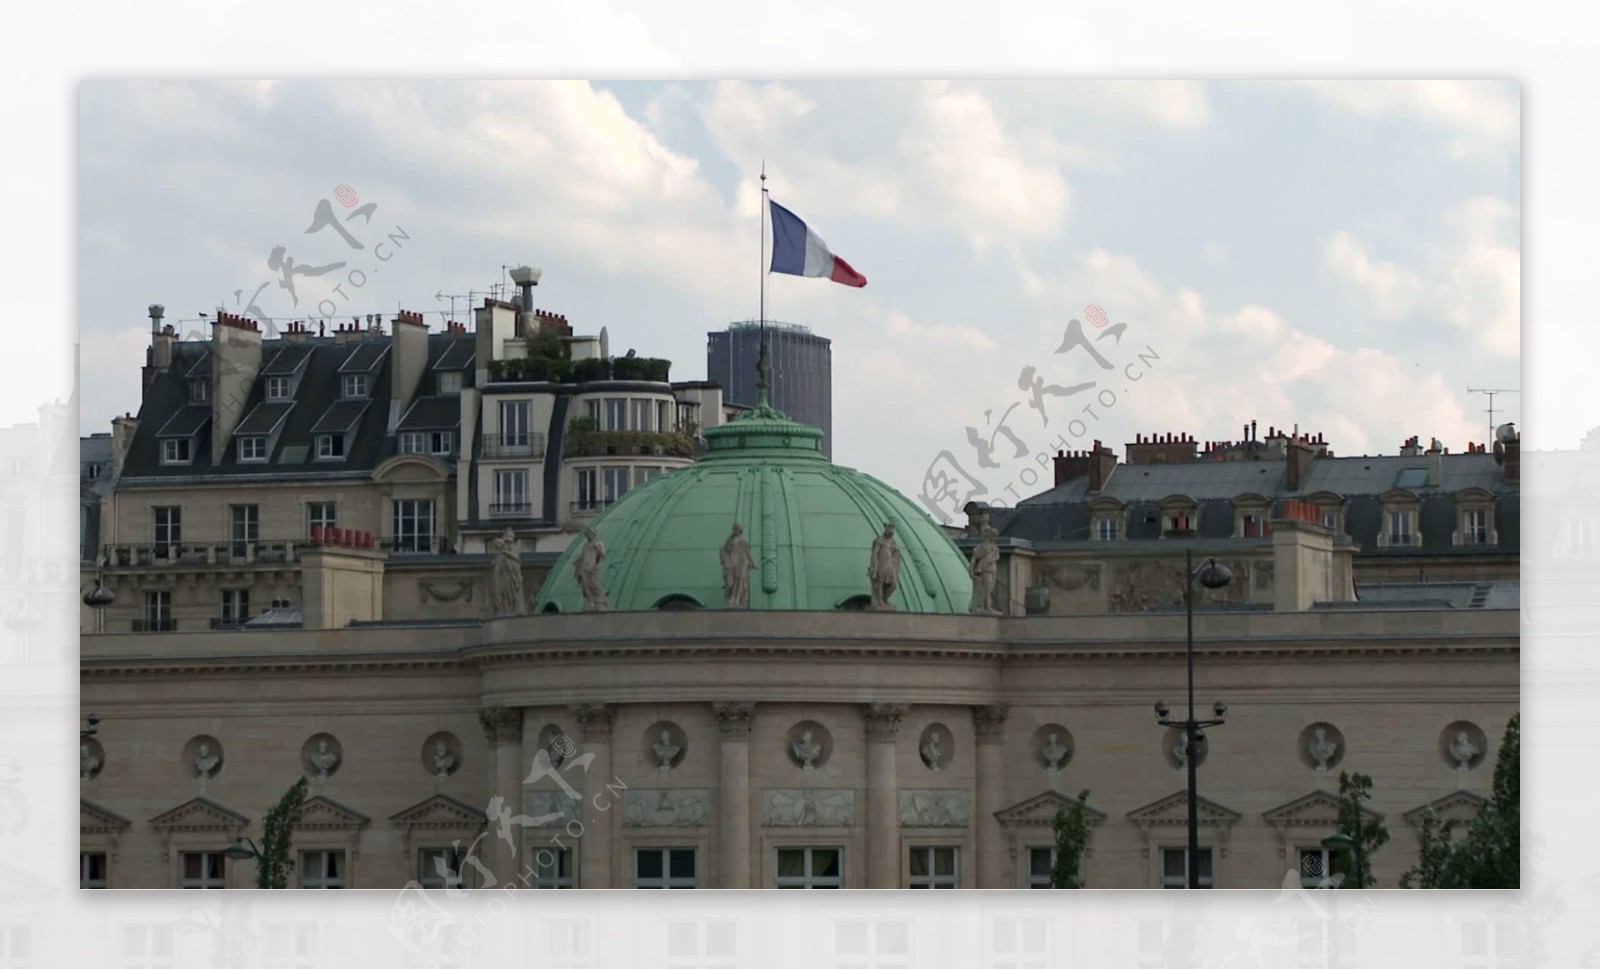 法国国旗在国立博物馆